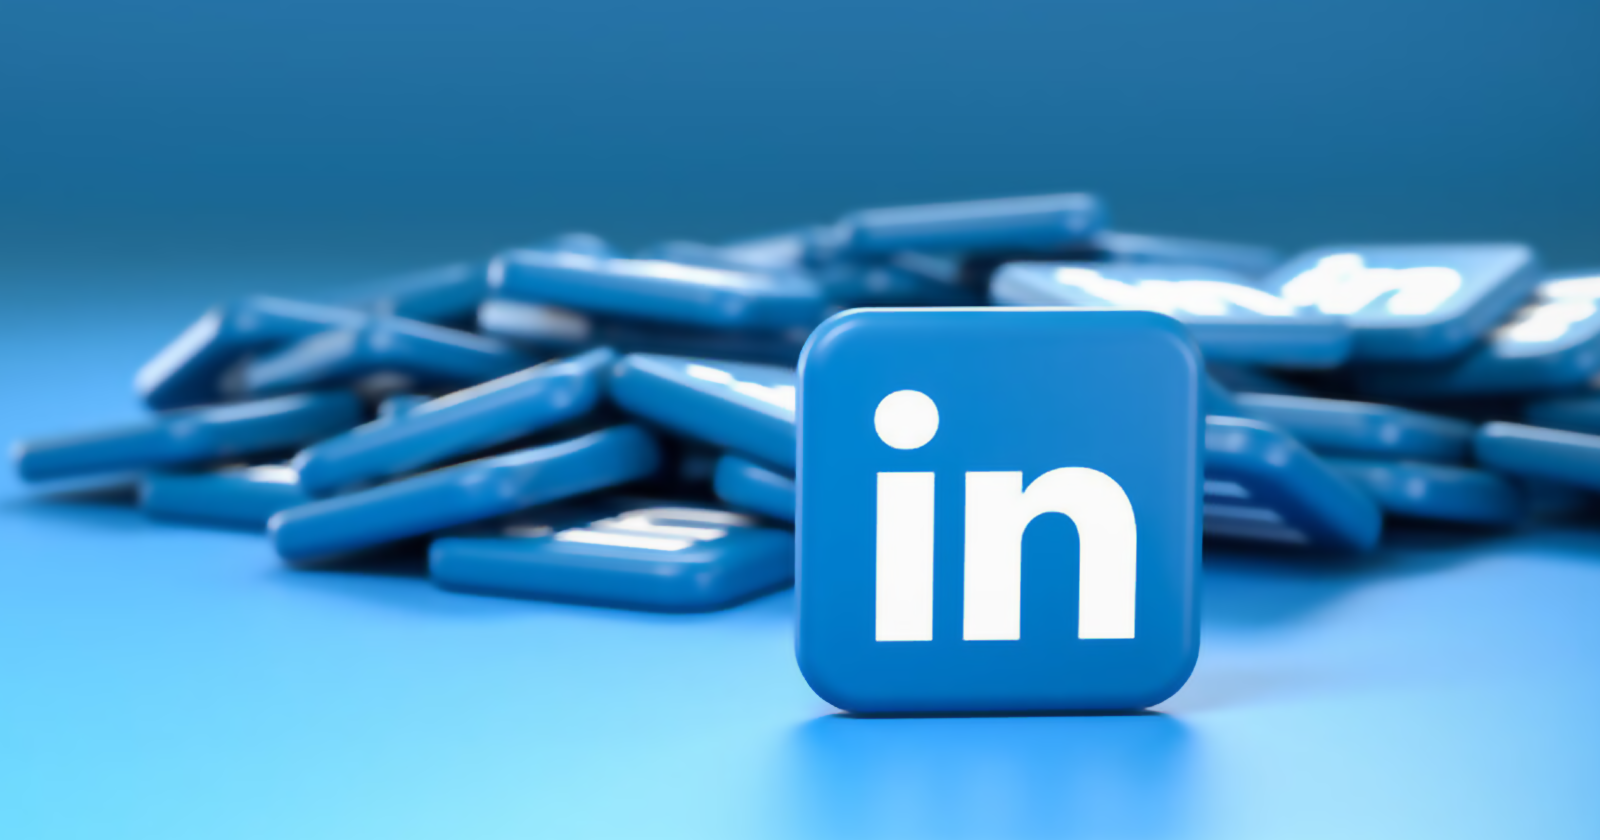 New LinkedIn Logo PNG Image Download